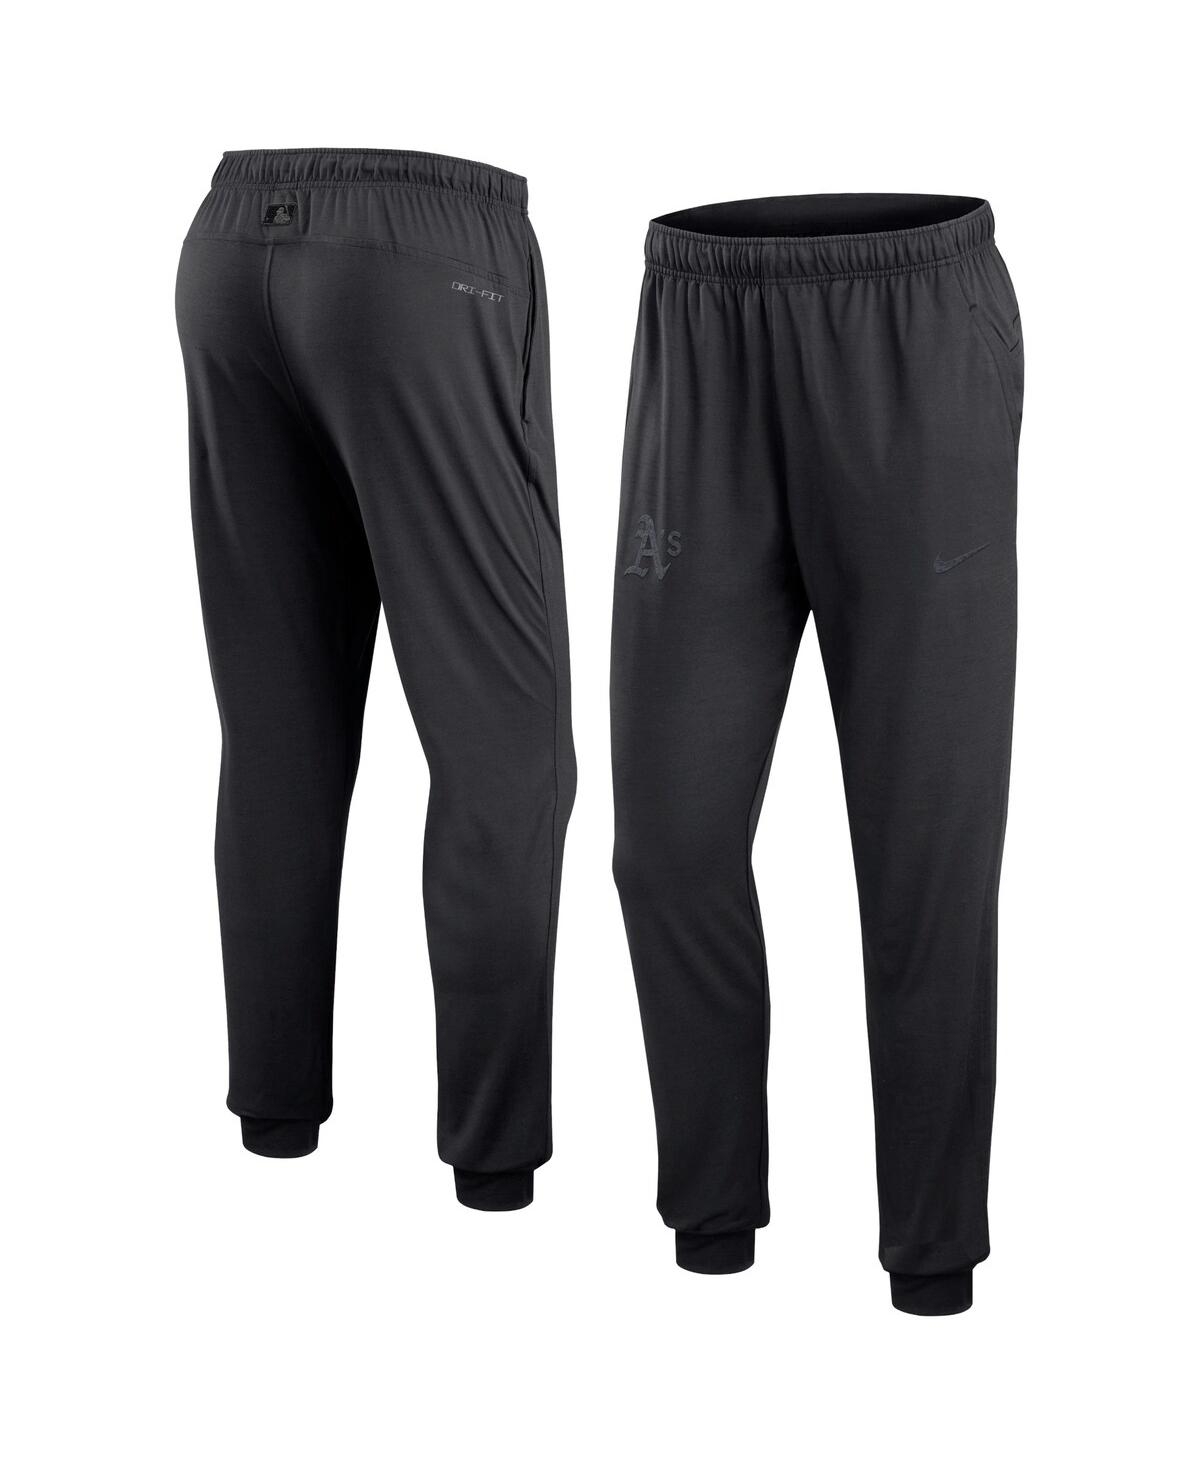 Shop Nike Men's  Black Oakland Athletics Authentic Collection Travel Performance Pants